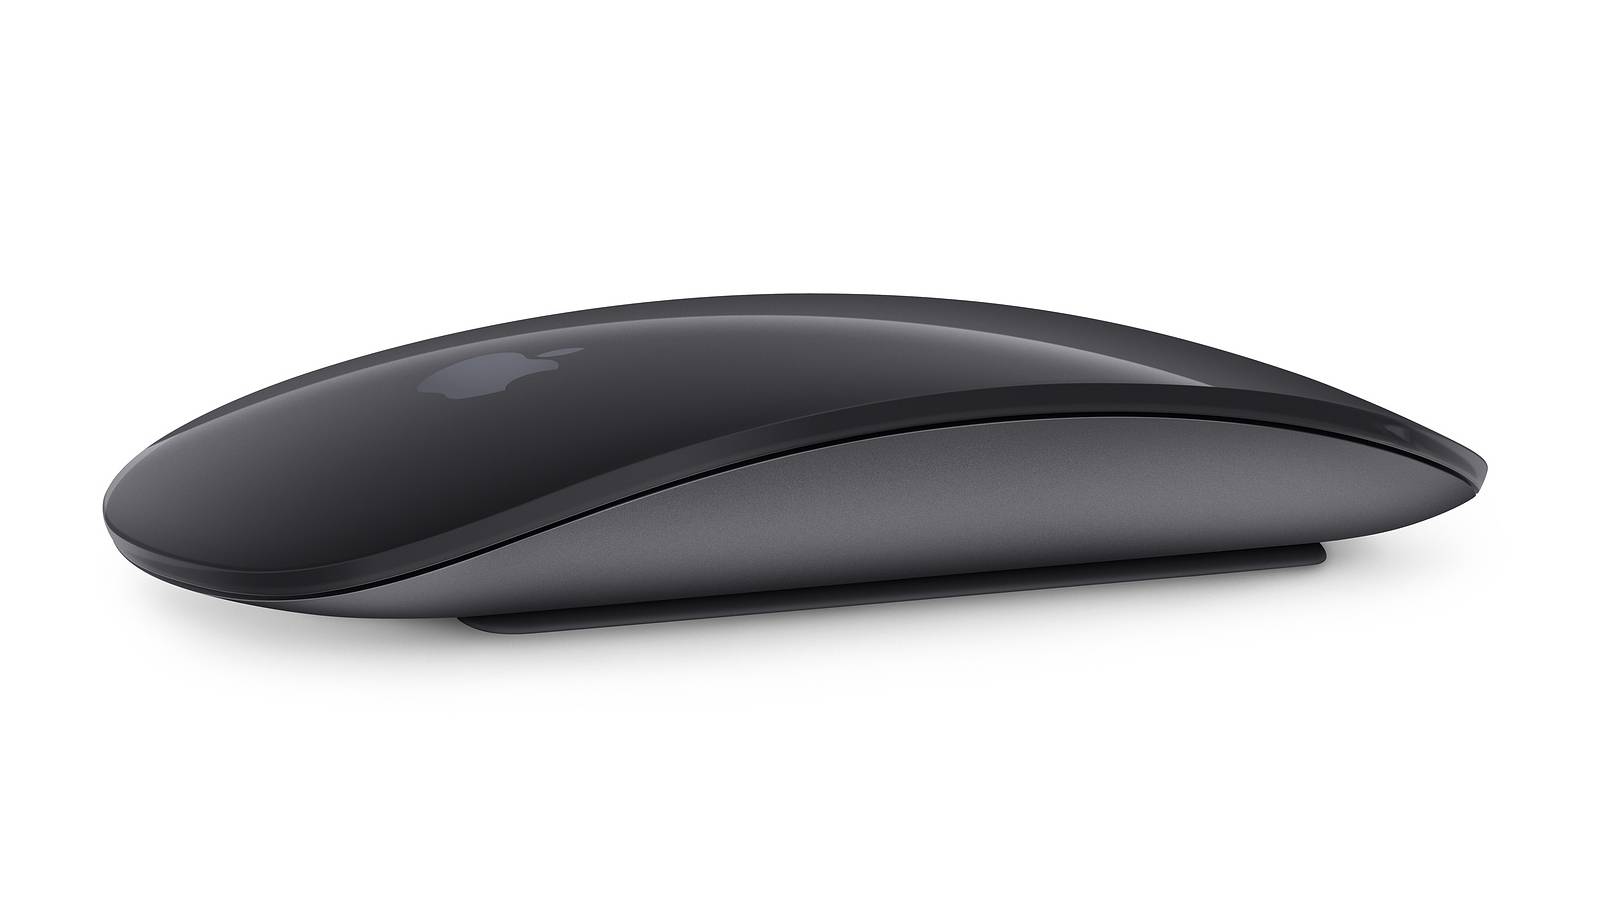 La Magic Mouse d'Apple devient enfin utilisable lors de sa recharge (enfin presque)